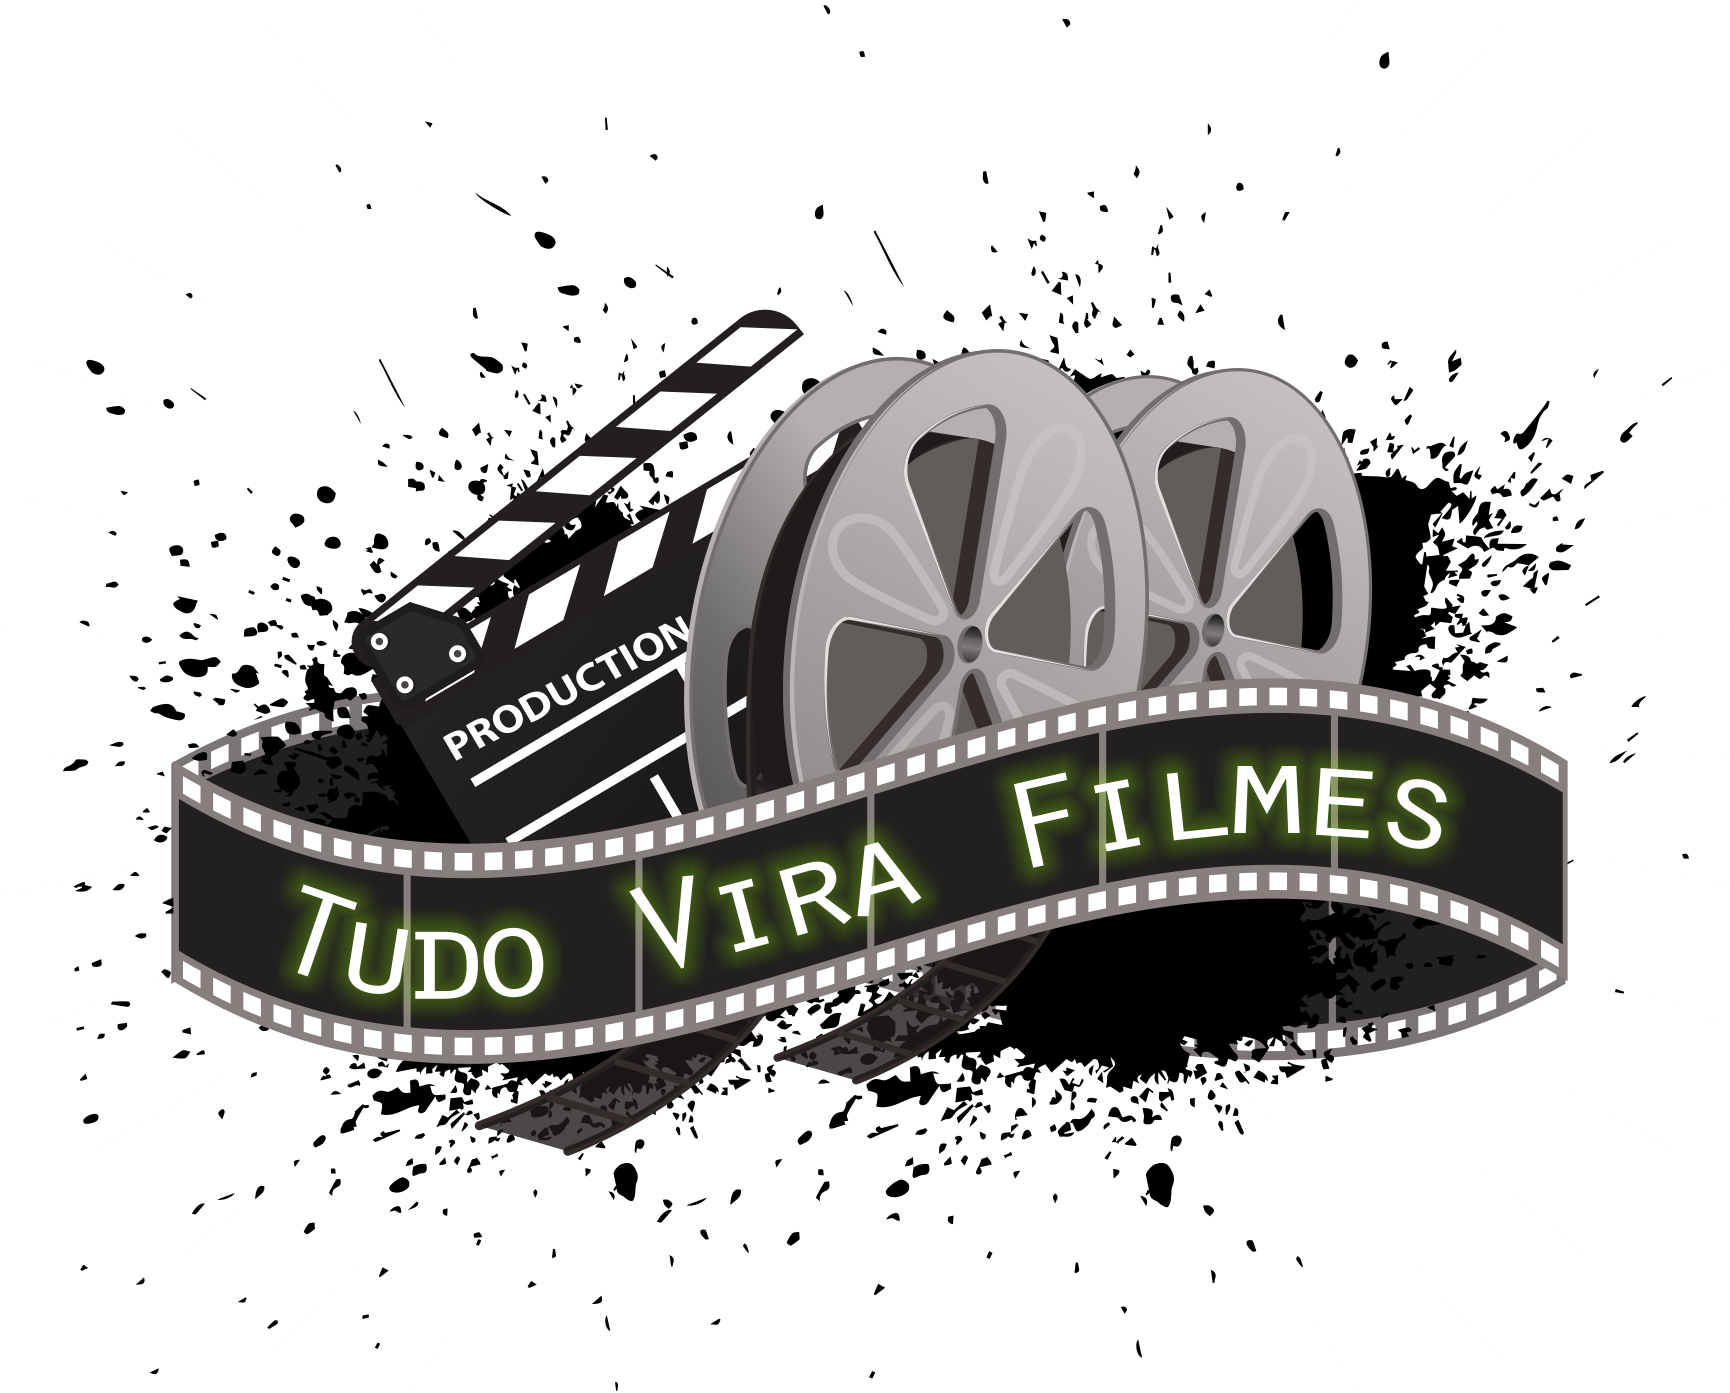 Tudo Vira Filmes oferta curso de Iniciação ao Cinema no Campus Boa Vista